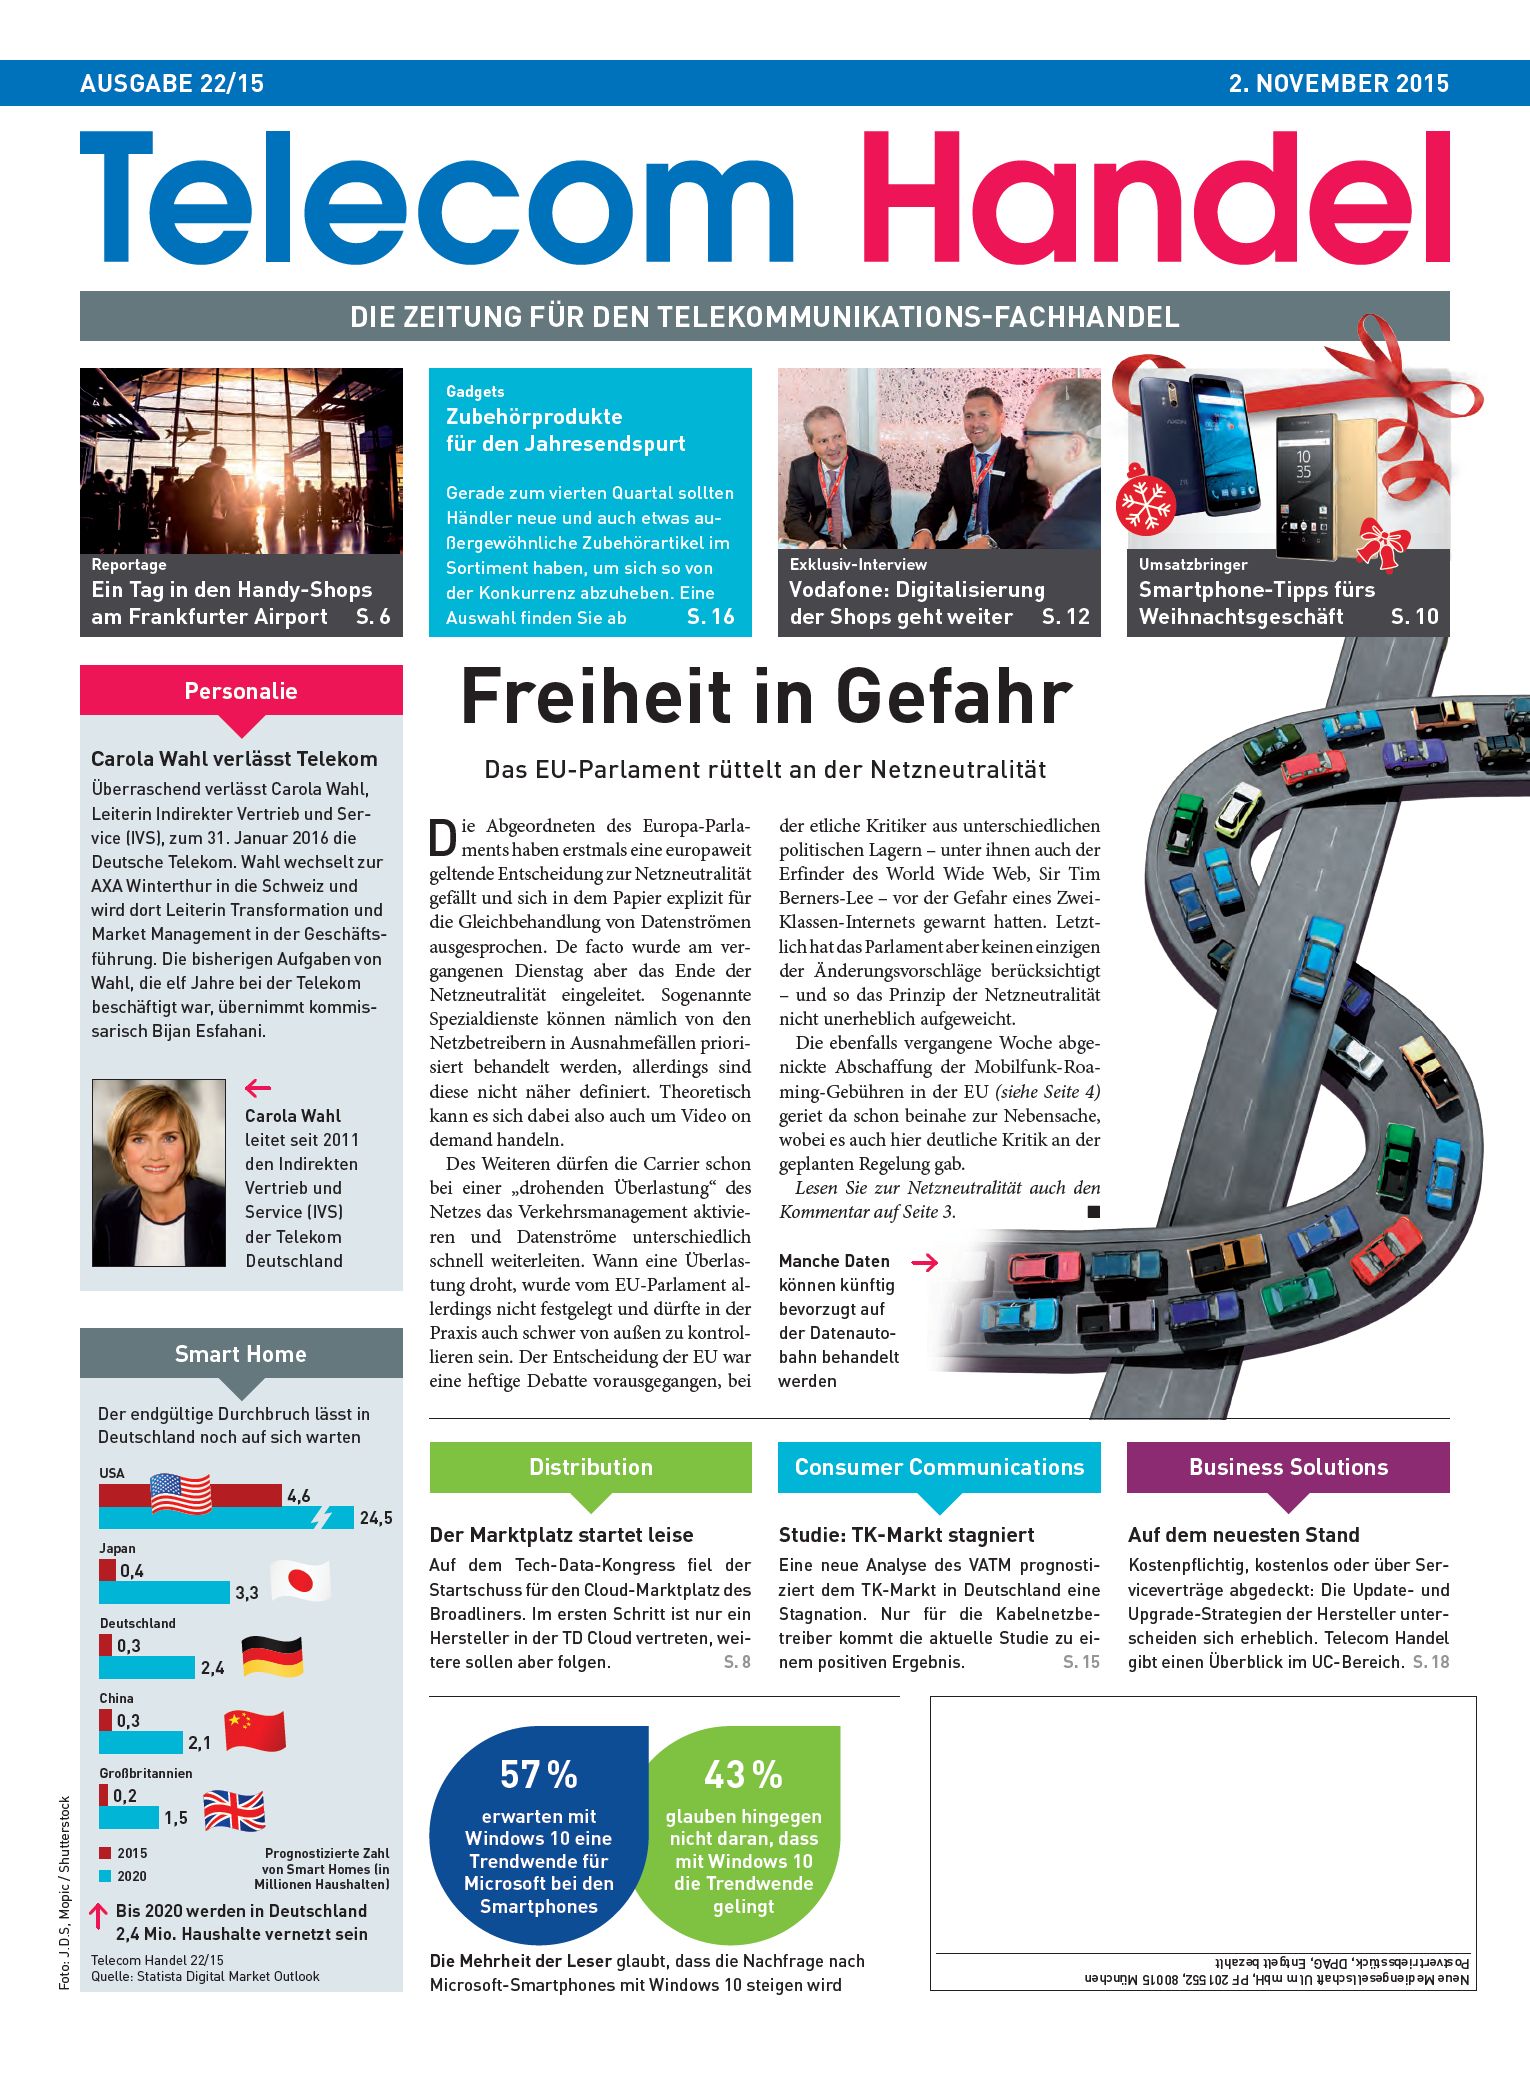 Telecom Handel Ausgabe 22/2015